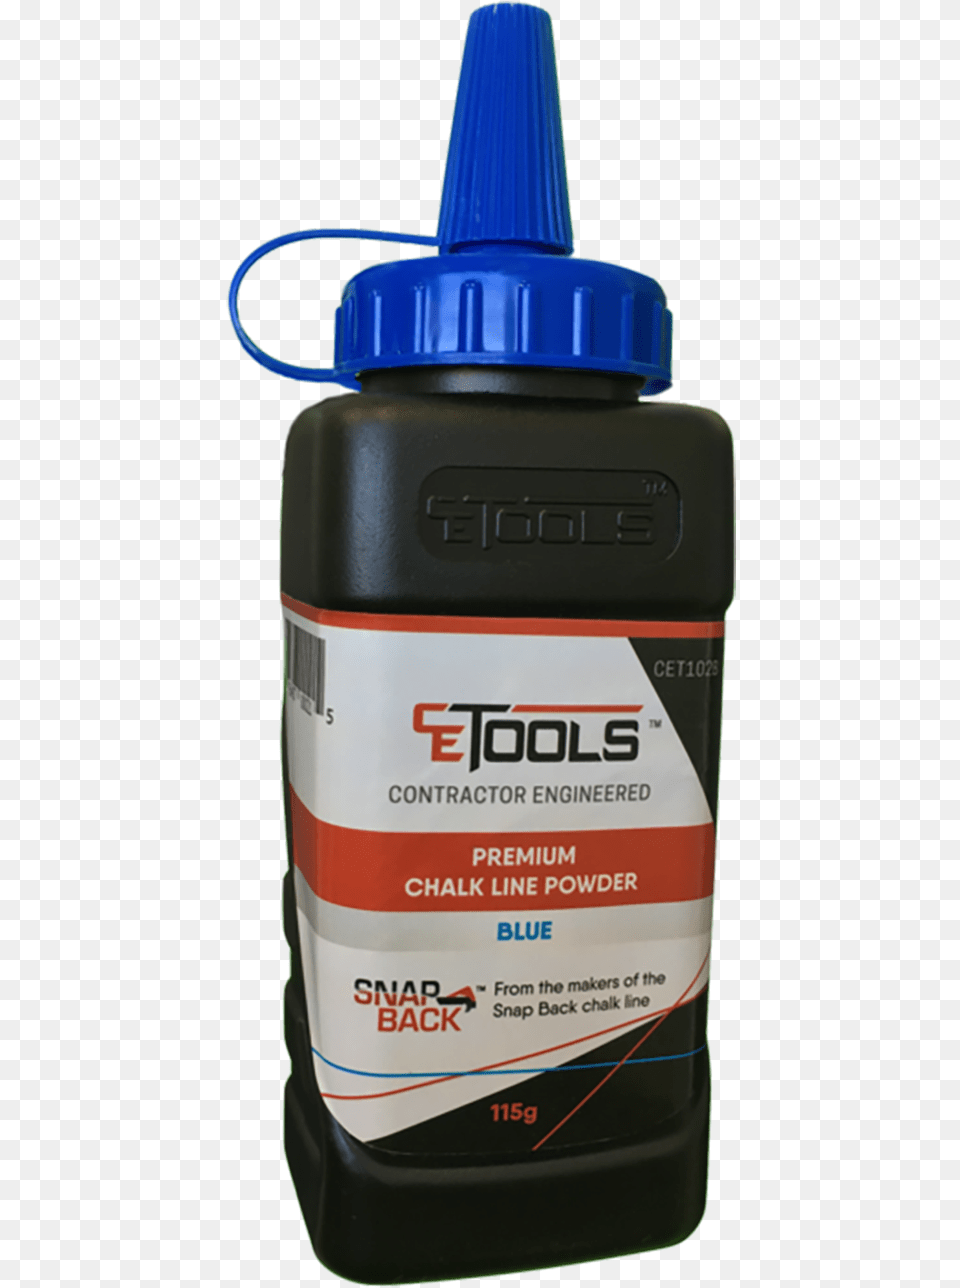 Cetools Blue Chalk Bottle, Ink Bottle, Shaker Free Transparent Png